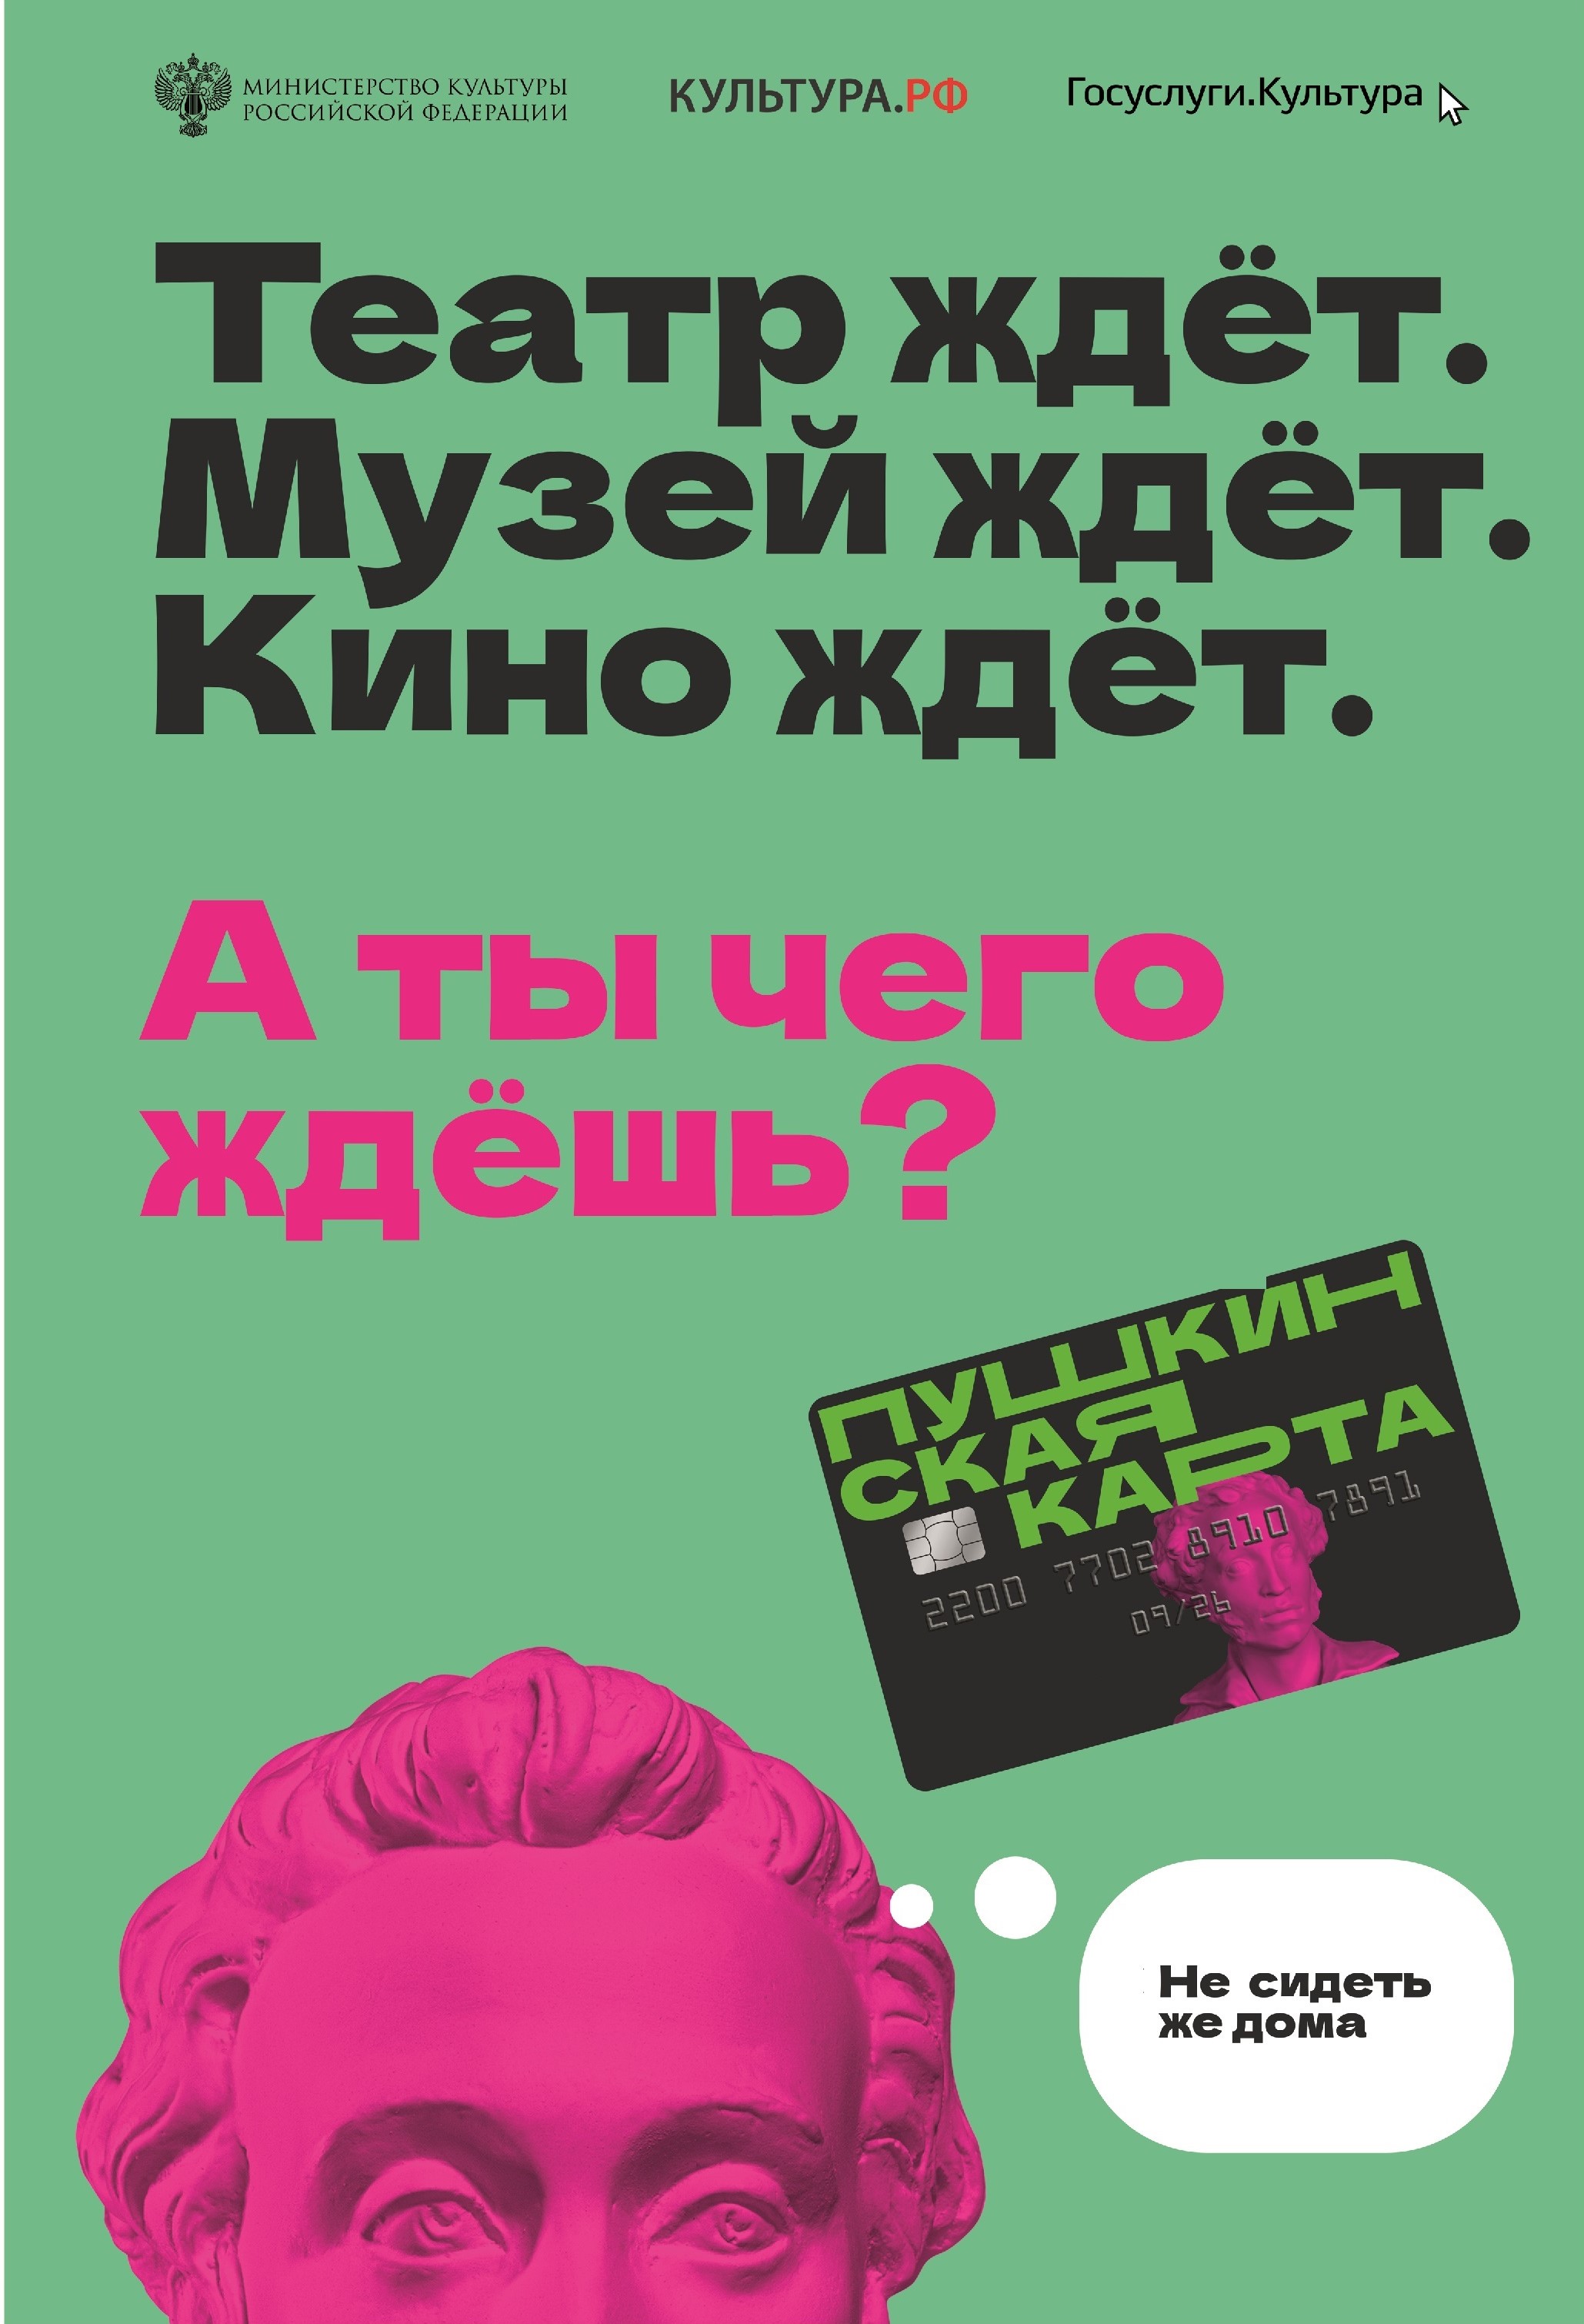 poster 2 Pushkin A3 цвет